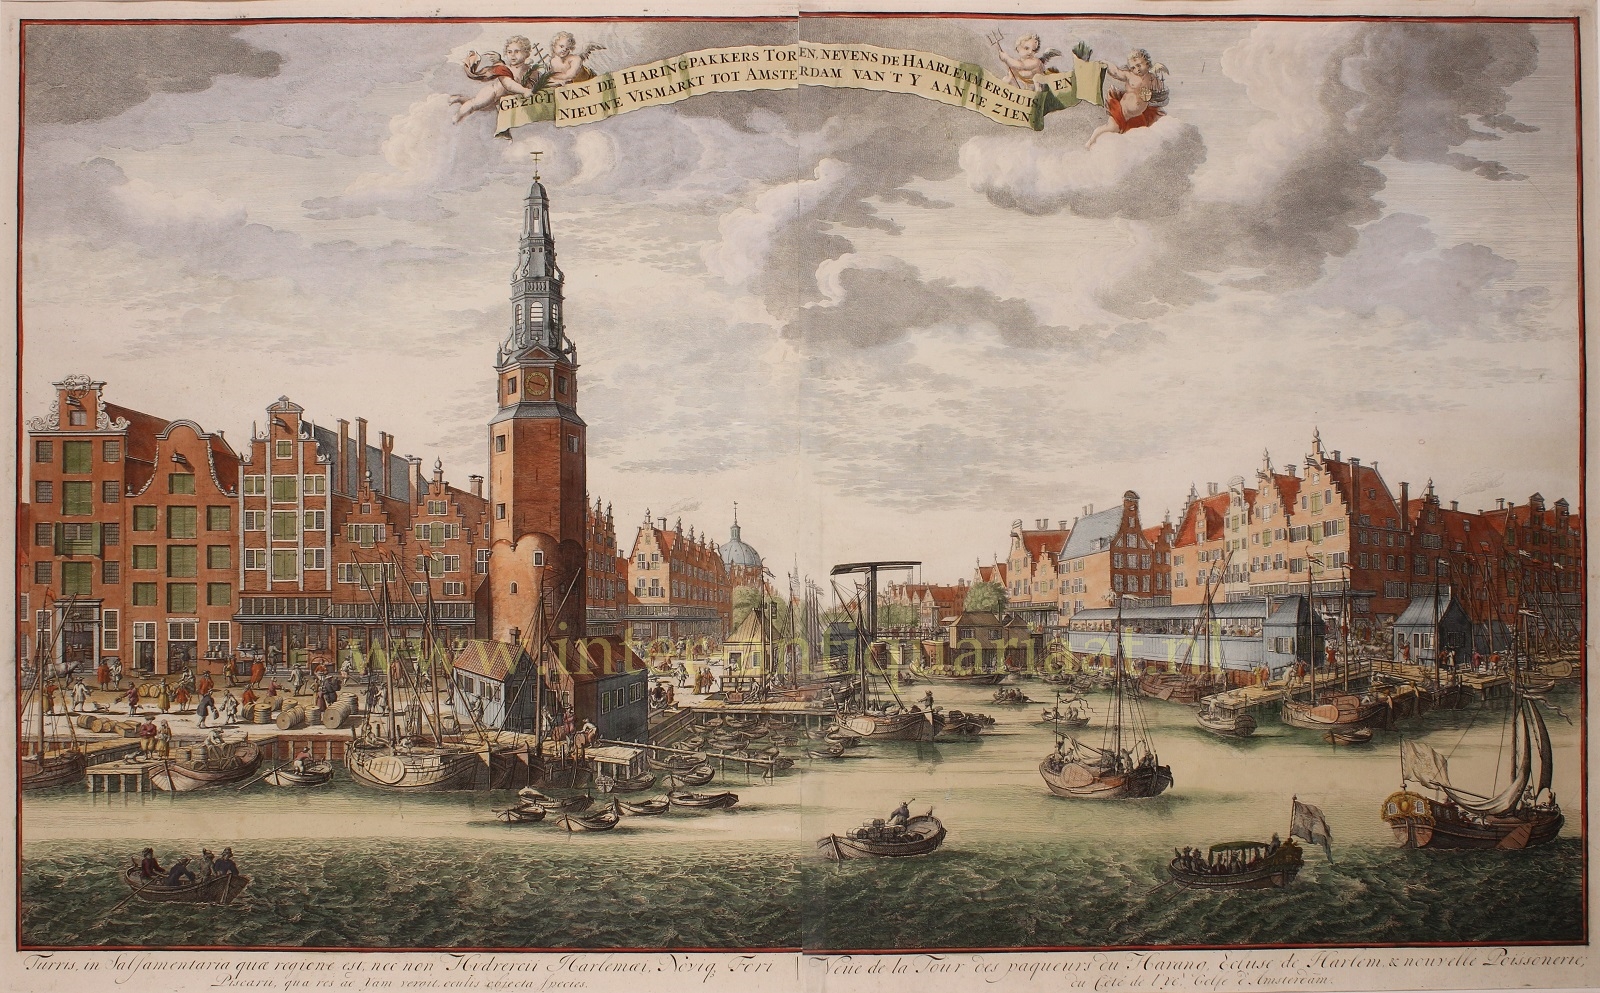 Leth-- Hendrick de - Amsterdam, Haringpakkerstoren - Hendrik de Leth, c. 1725